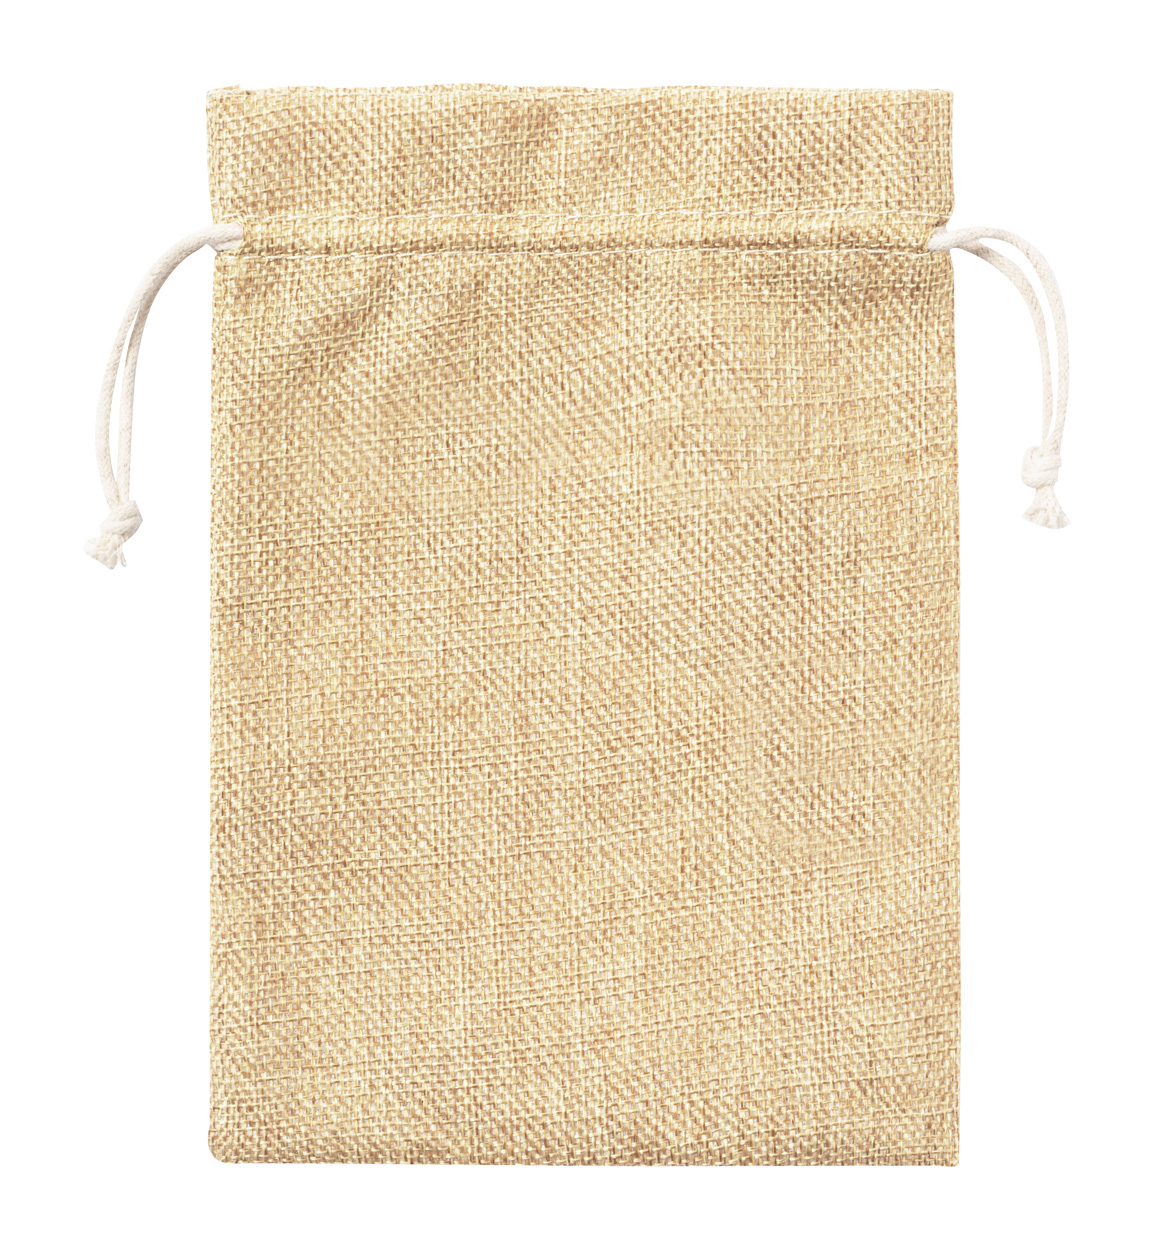 Pidrum grocery bag - beige